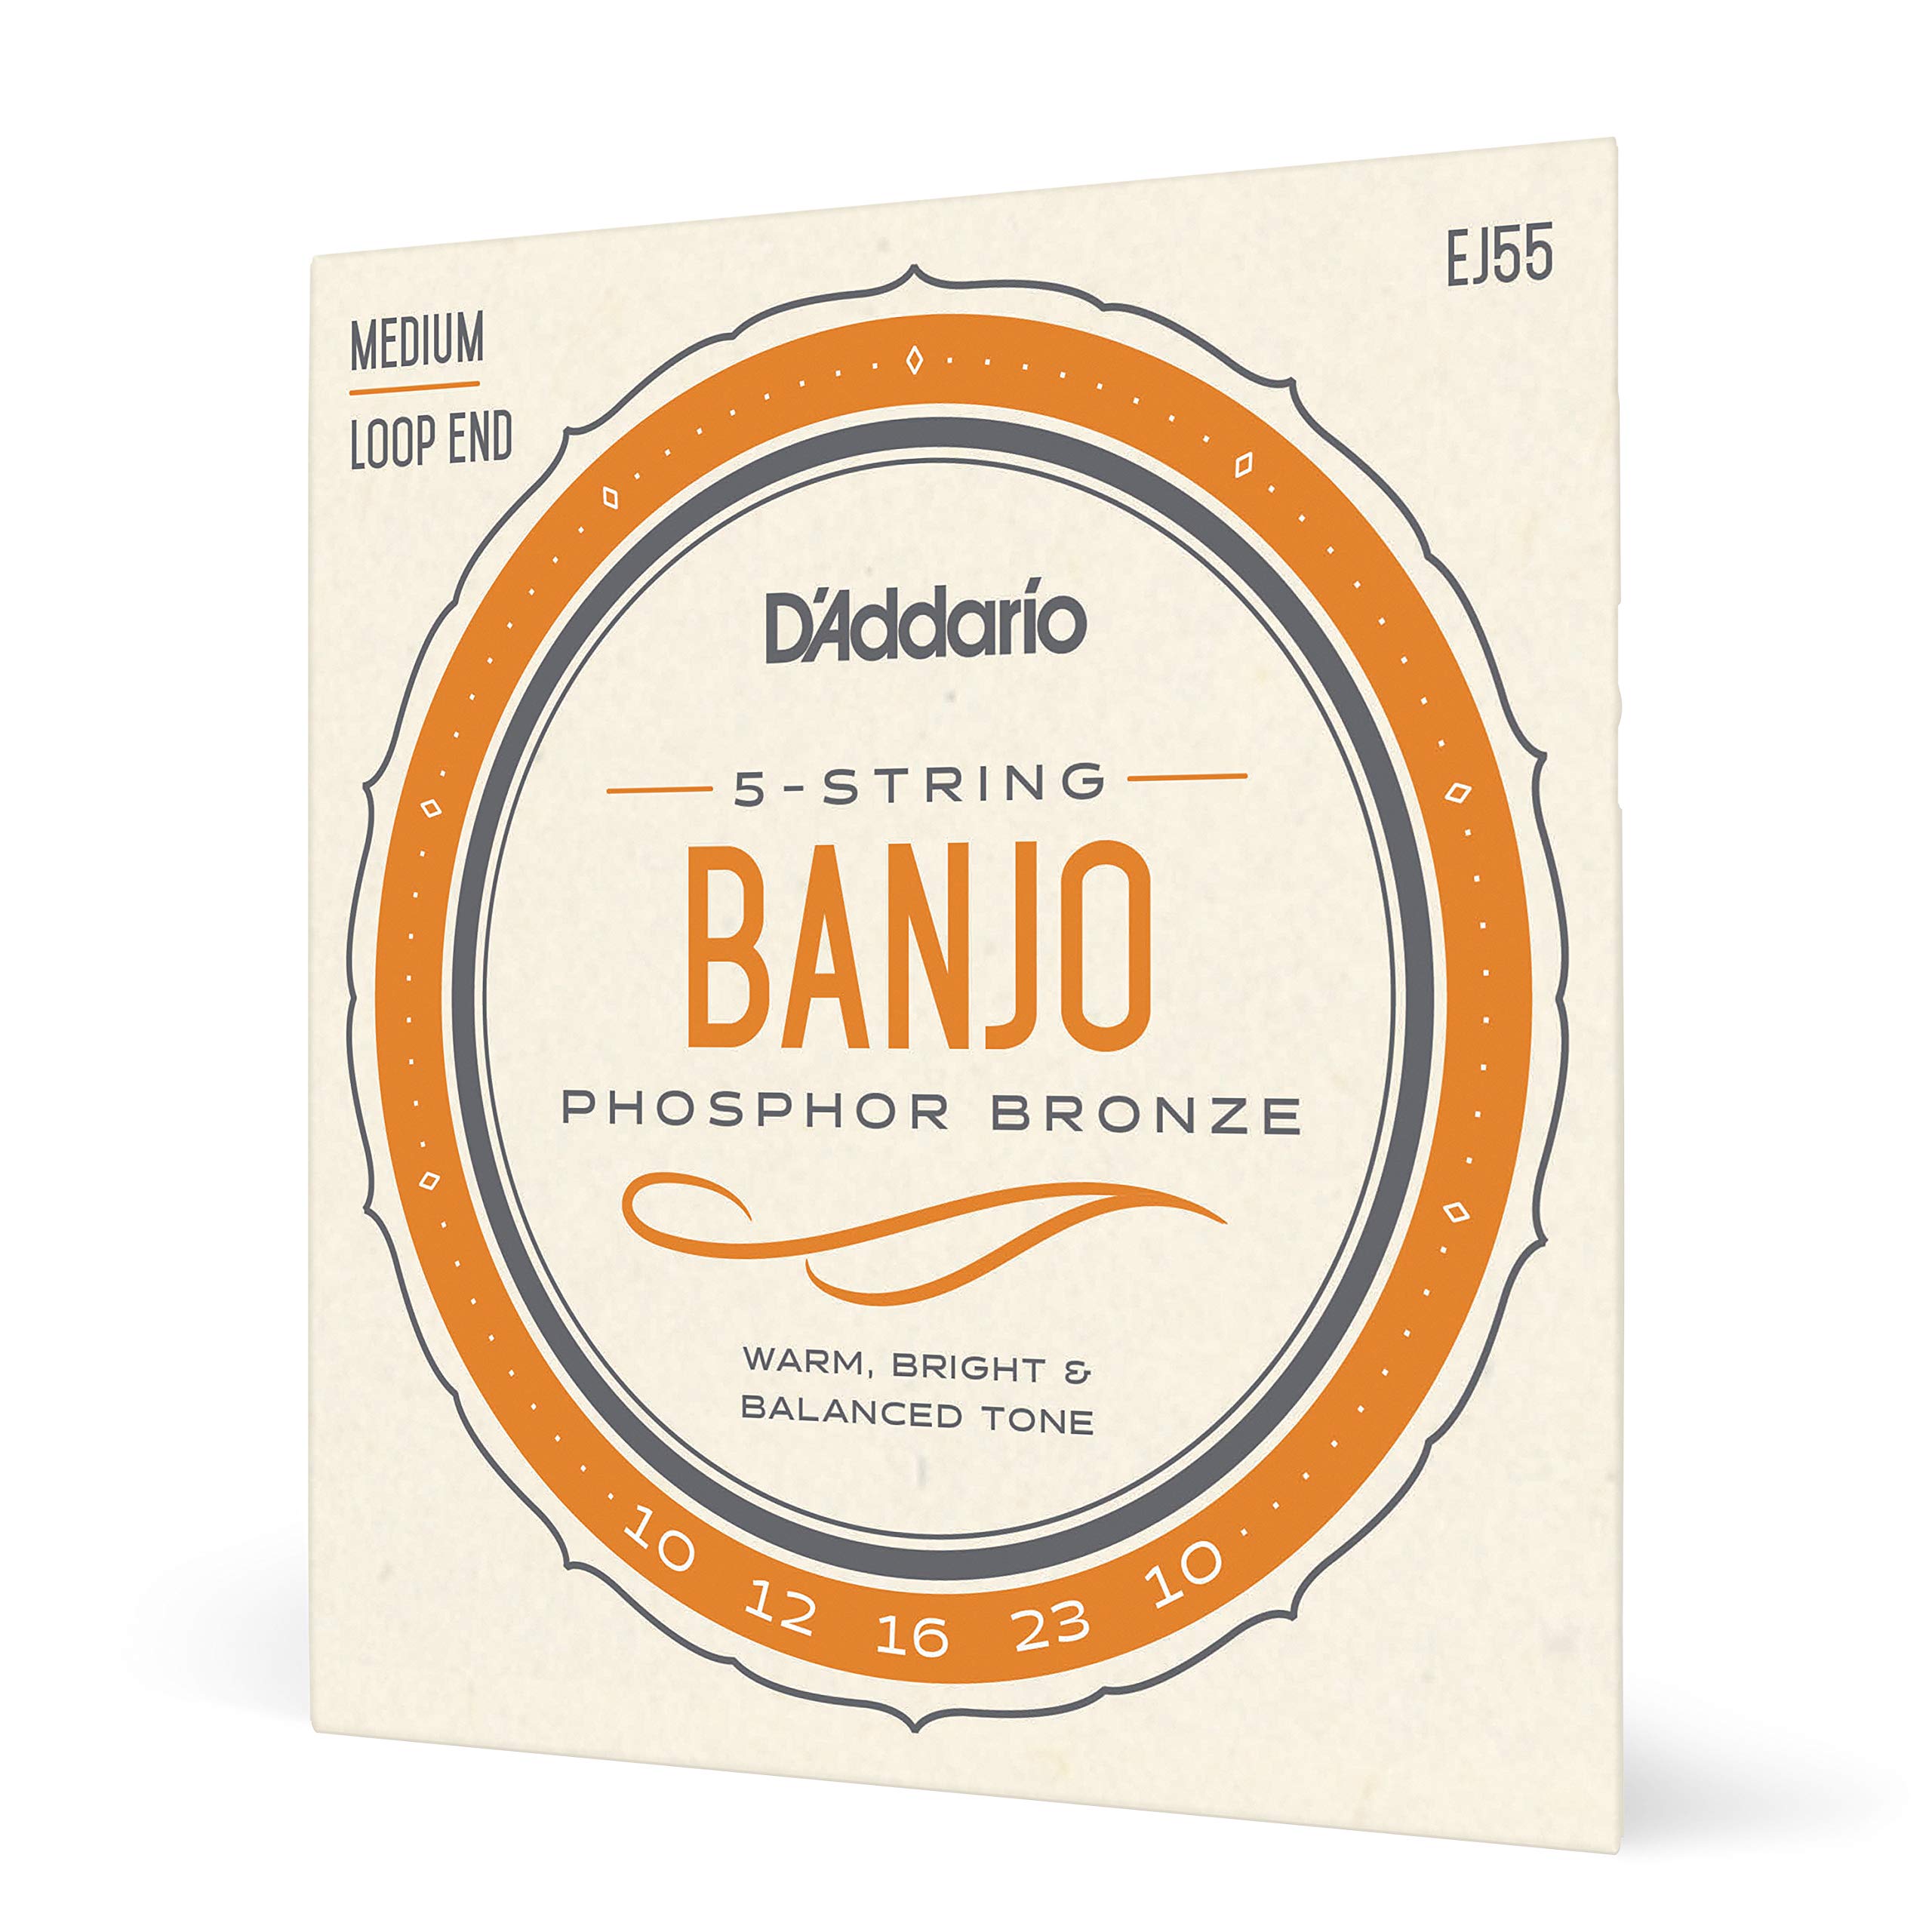 Book Cover D'Addario EJ55 Banjo Strings 5 String Set - Banjo Strings Set - Phosphor Bronze, Medium, 10-23 Tenor Banjo, 9-30 Nickel